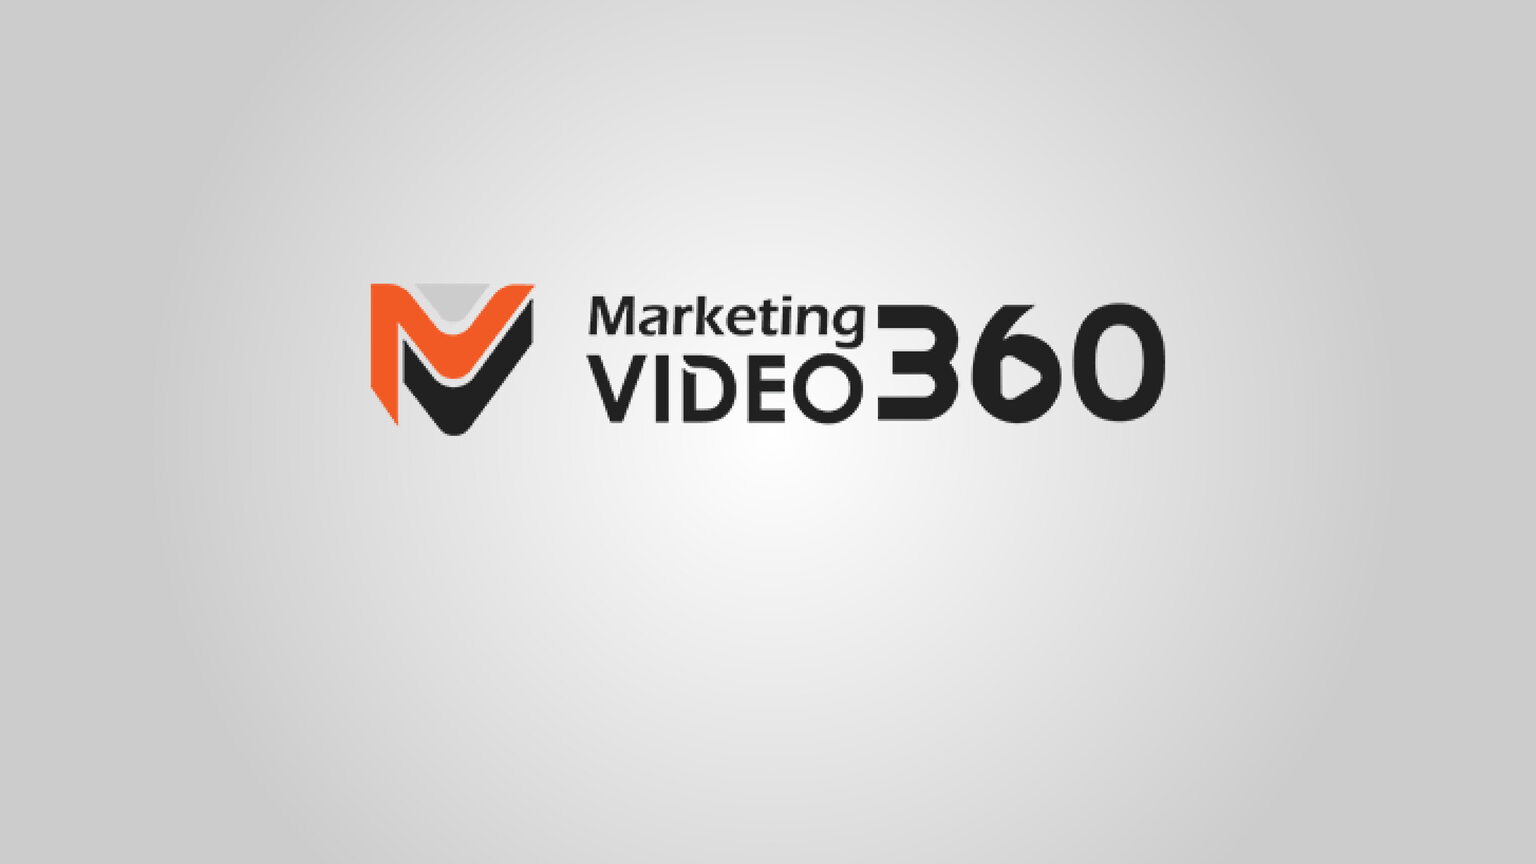 Marketingvideo360